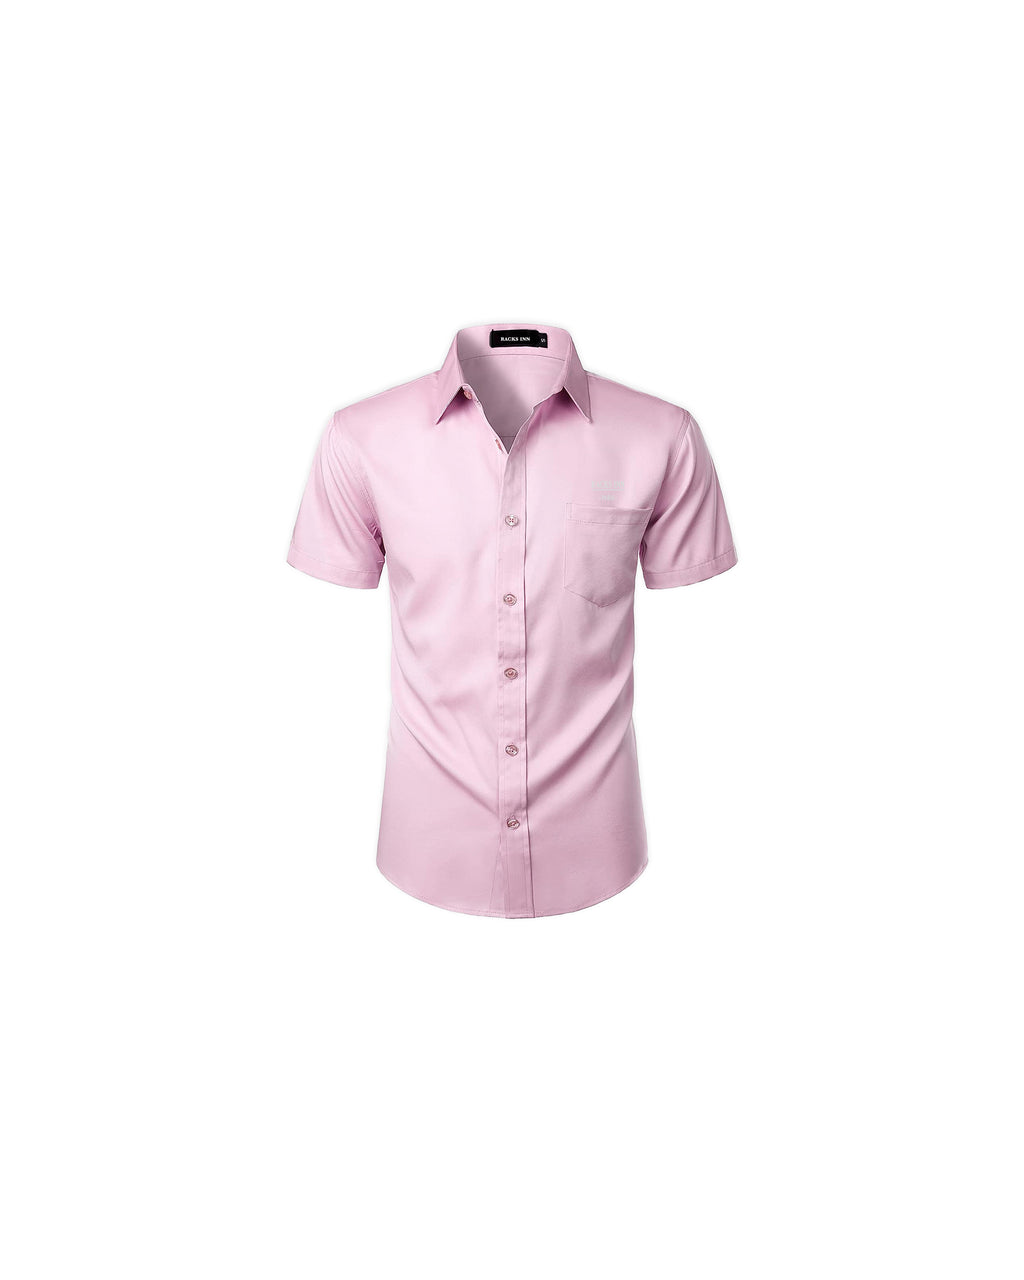 Paris Casual Shirt - Pink